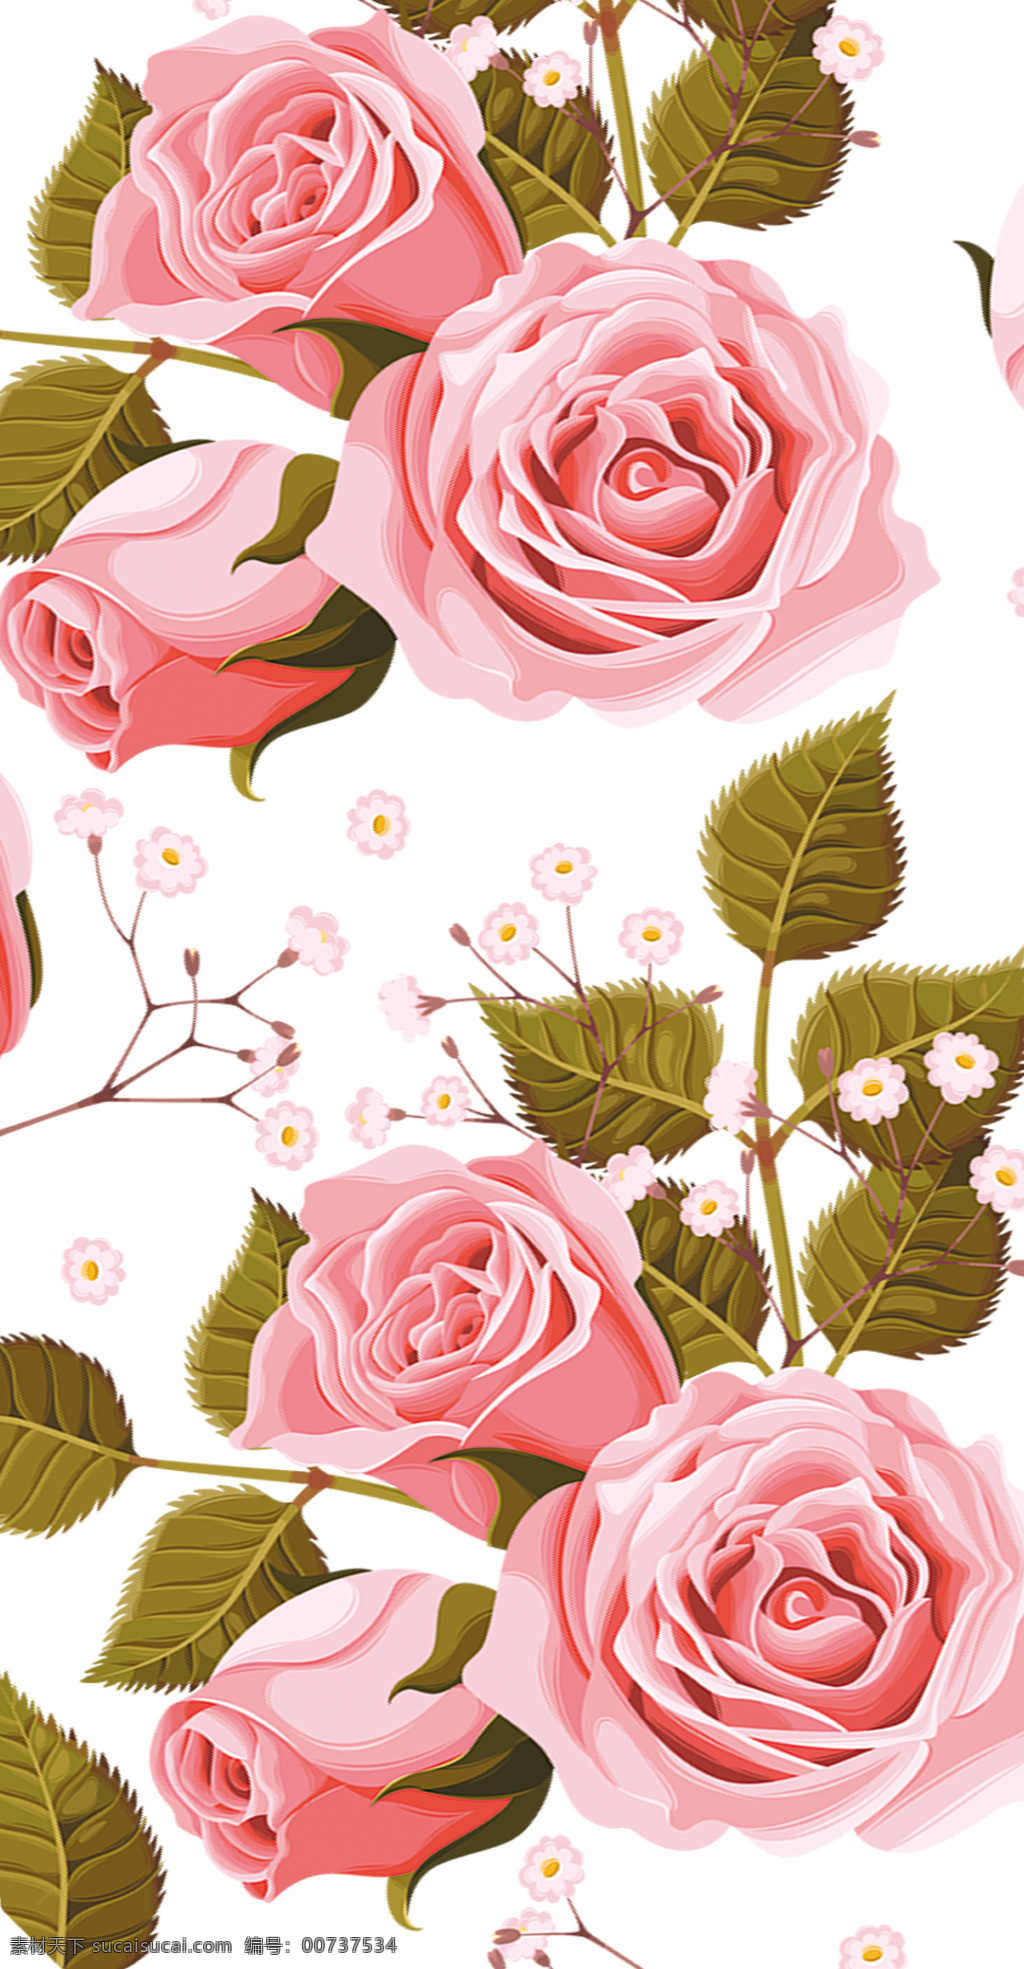 浅粉 玫瑰 手机壳图案 白底 绿叶 底纹边框 花边花纹